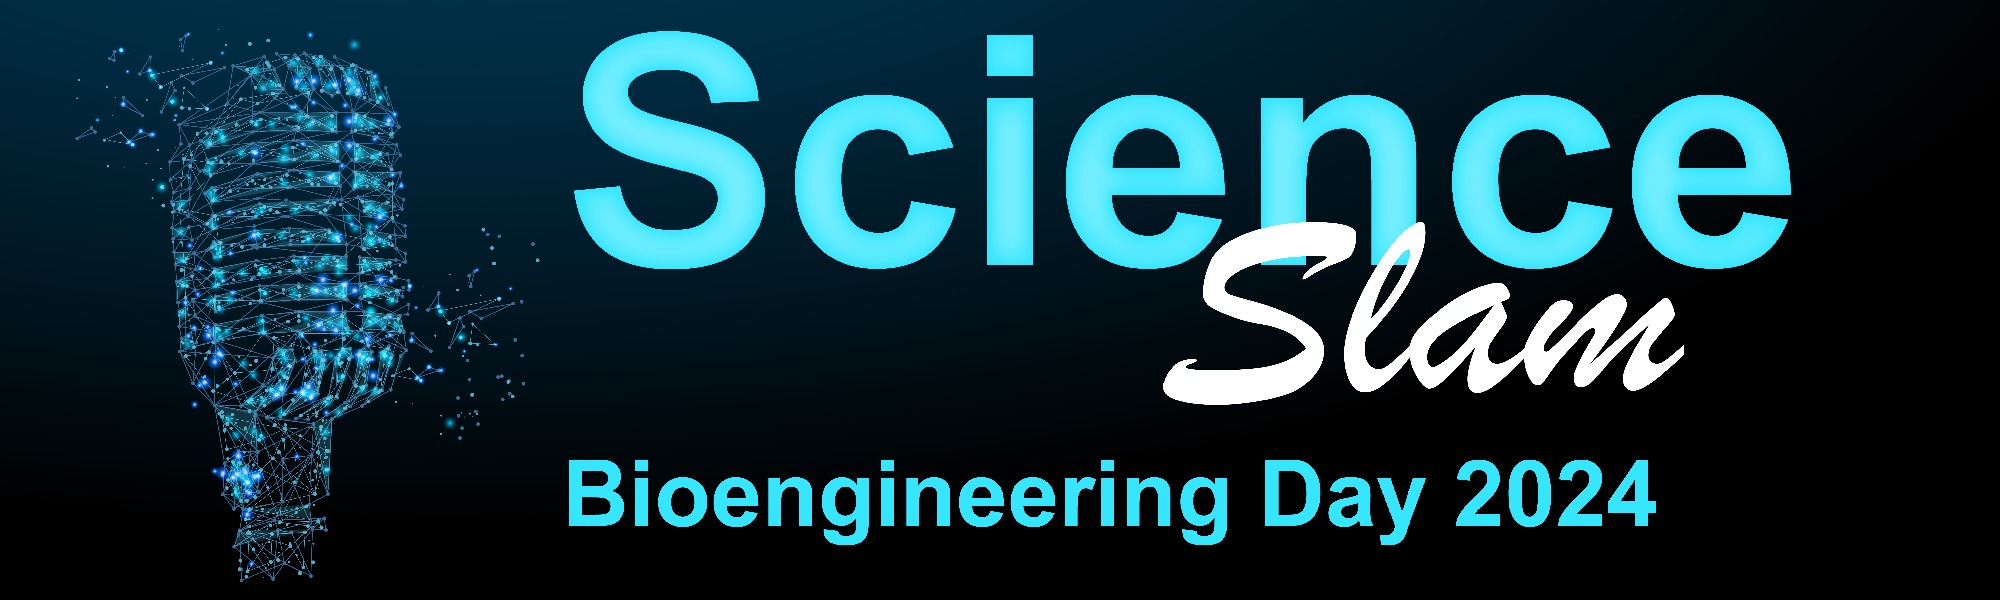 Bioengineering Day 2024: Science Slam